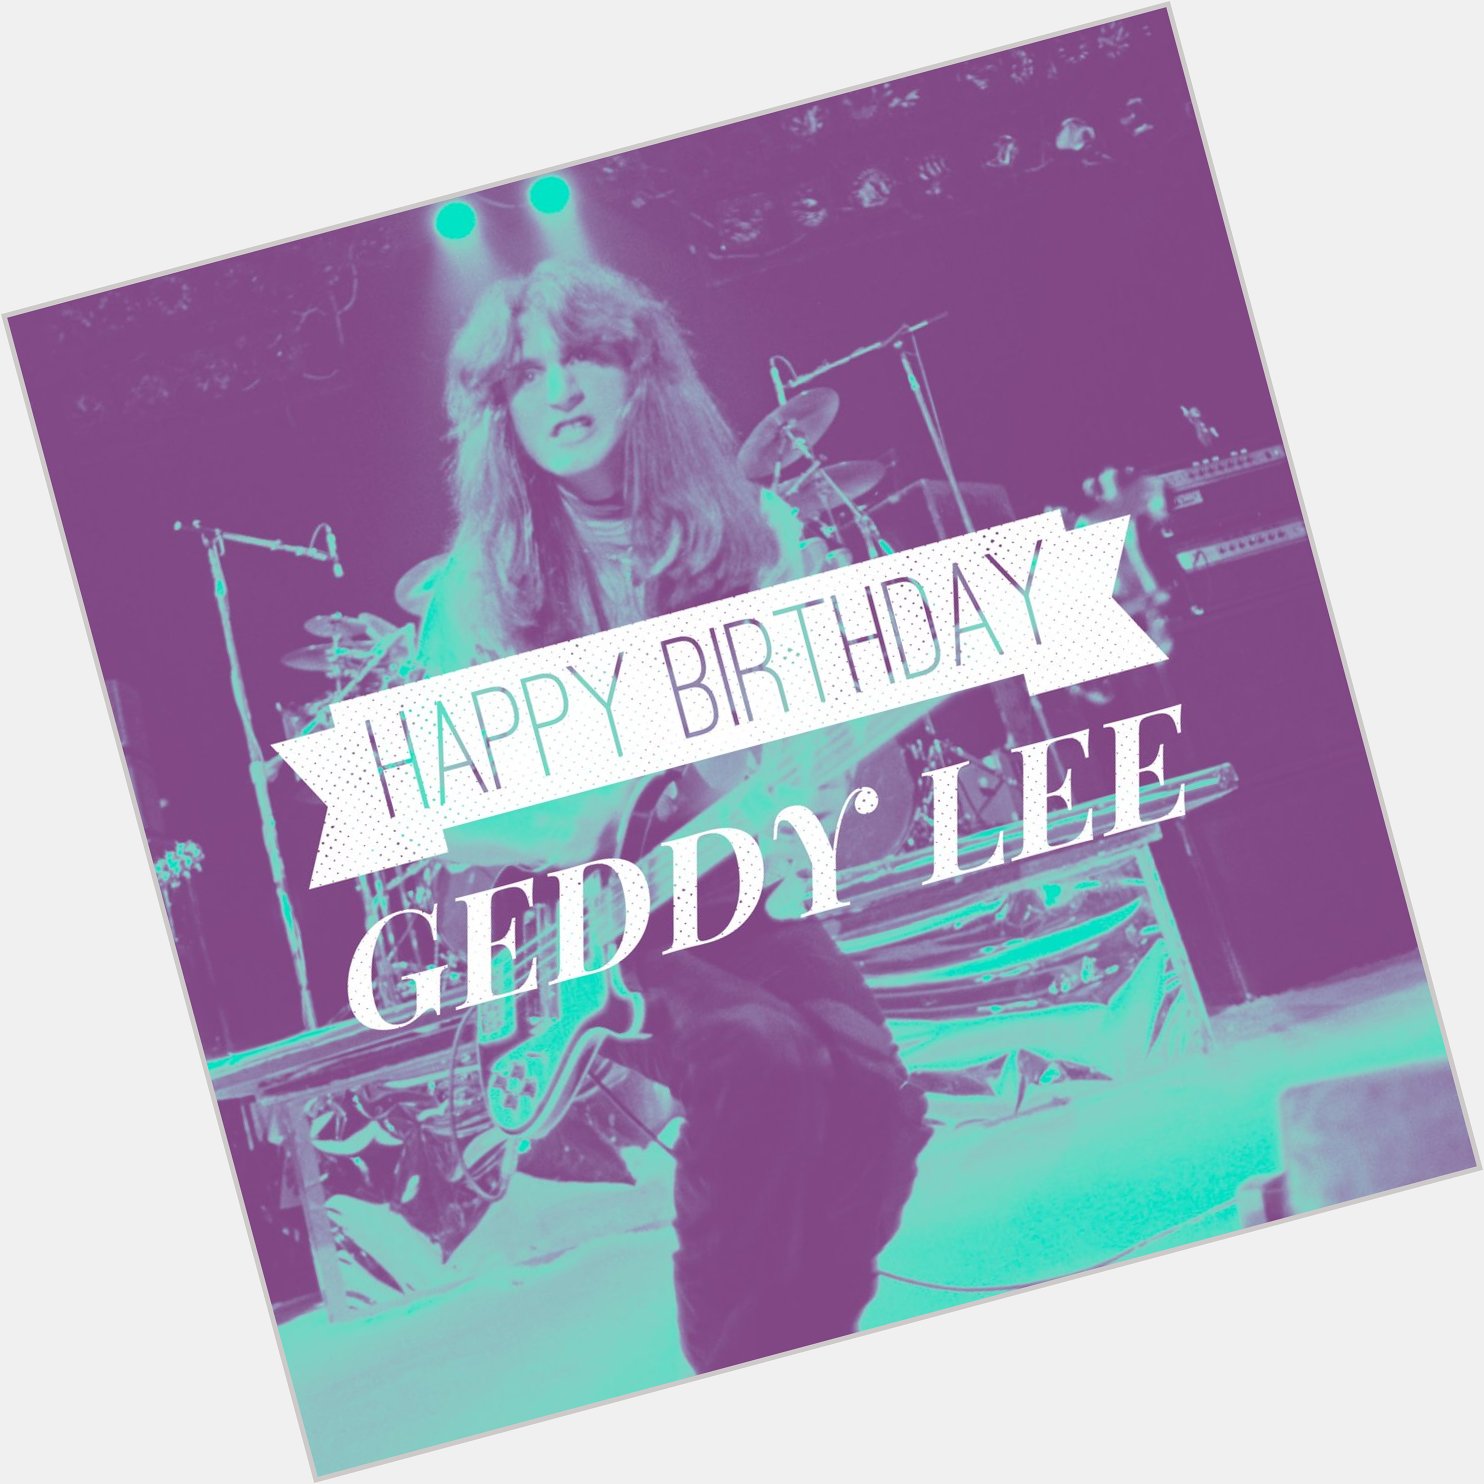 Happy 64th Birthday Geddy Lee!!!!! 